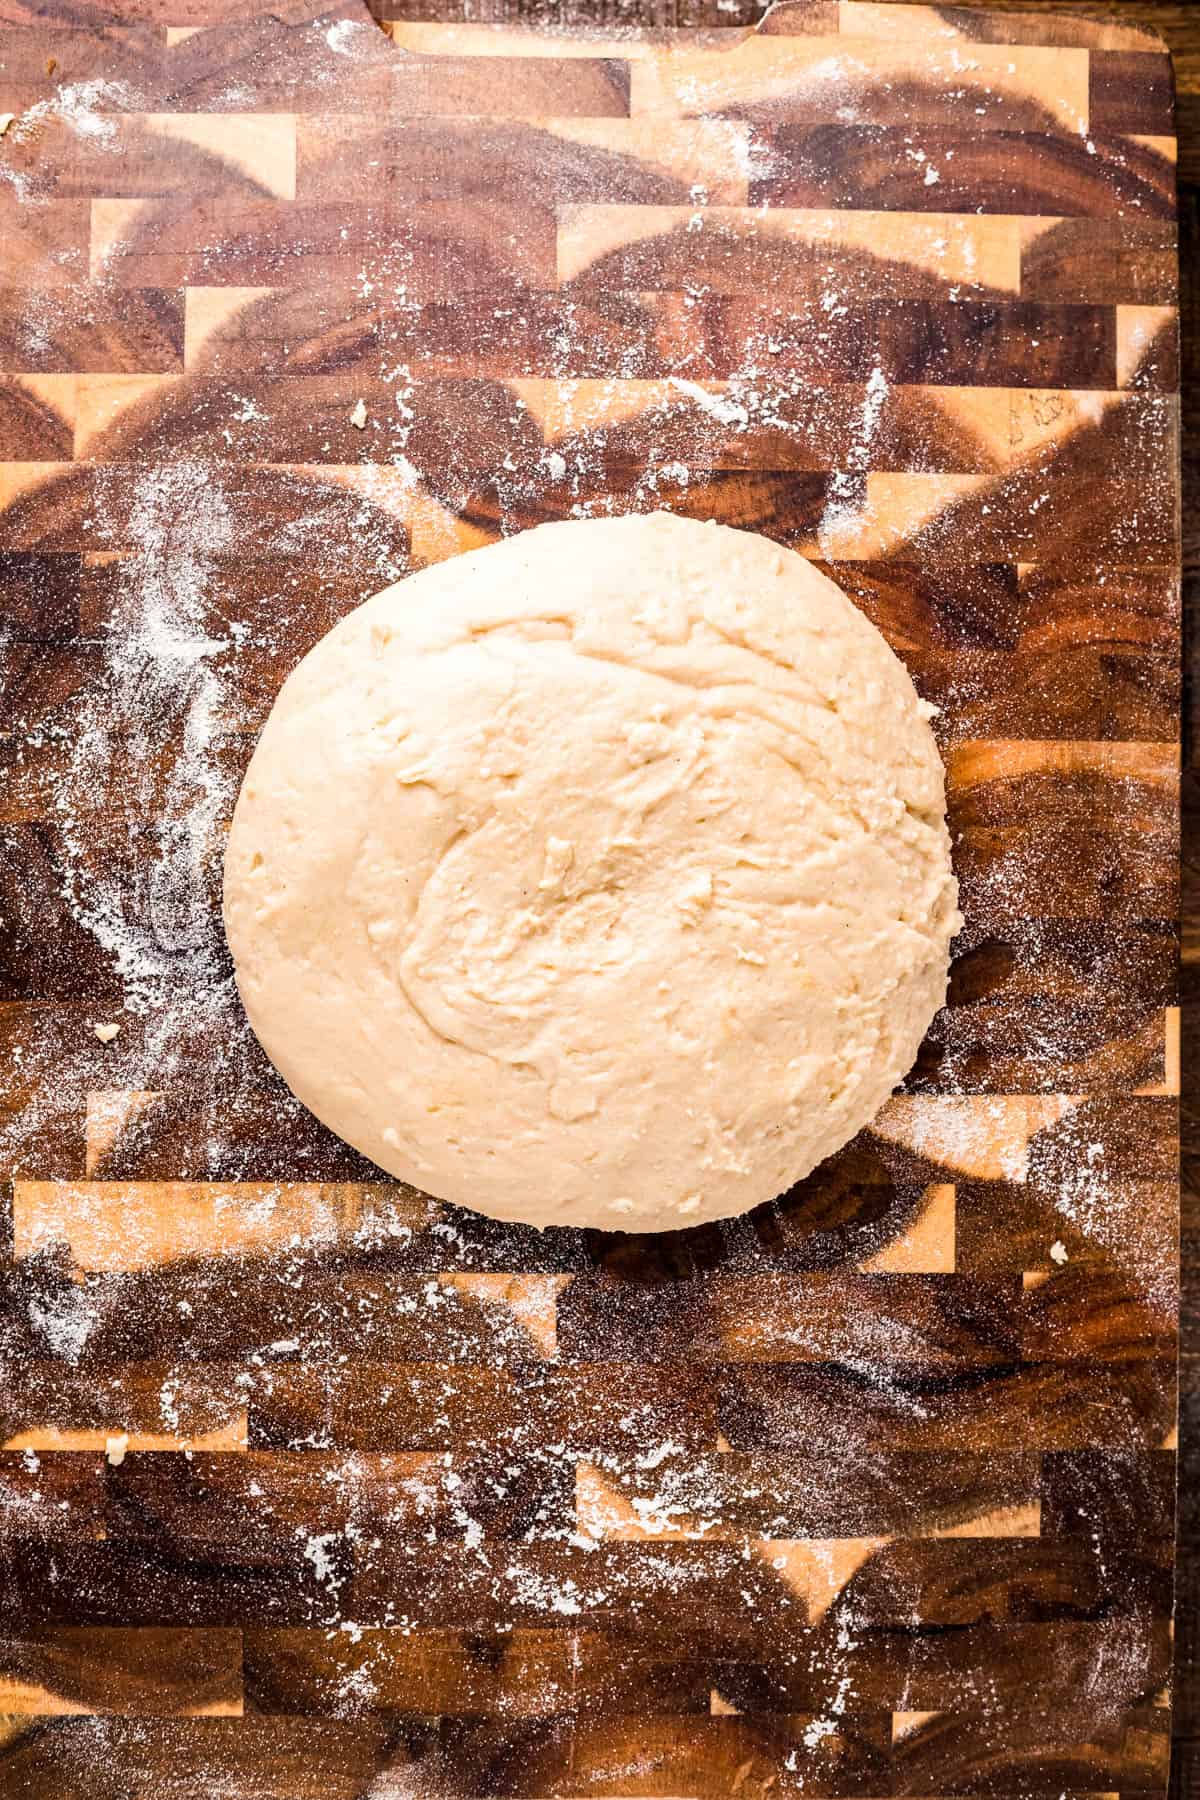 Mochi dough on a wooden cutting board.